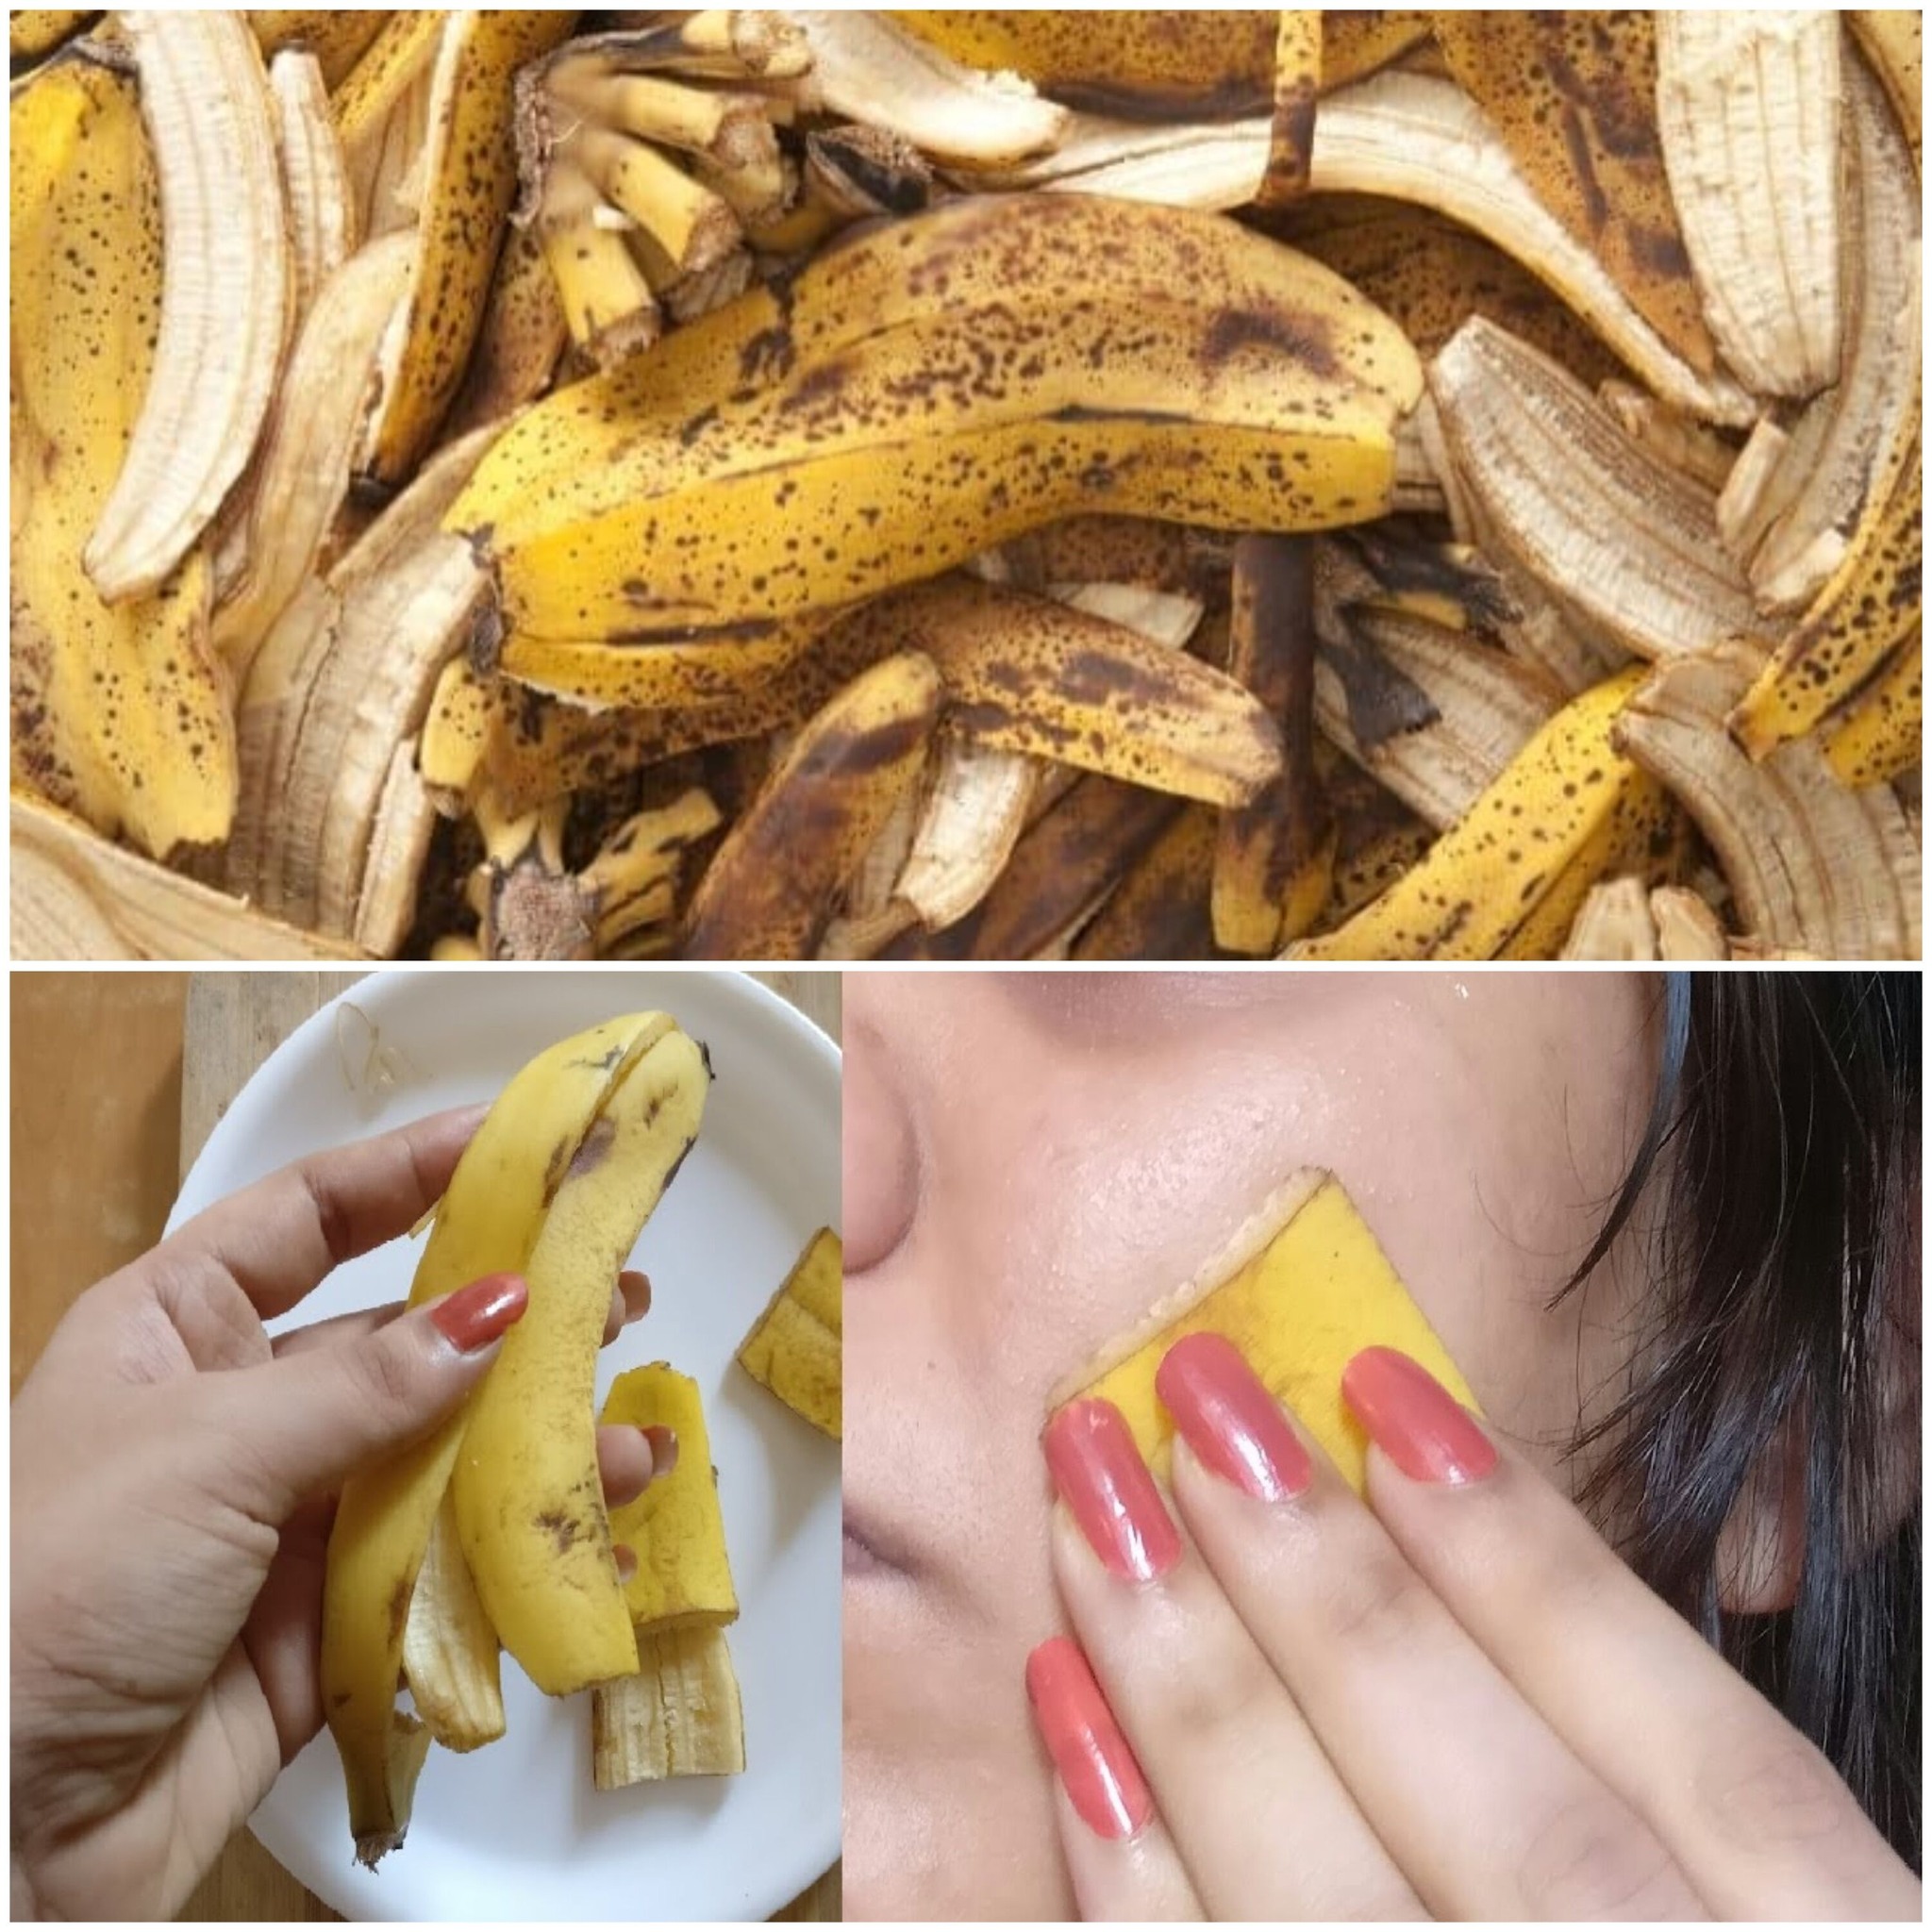 Banana Peel Magic: Say Goodbye to Pimples with a DIY Banana Face Mask